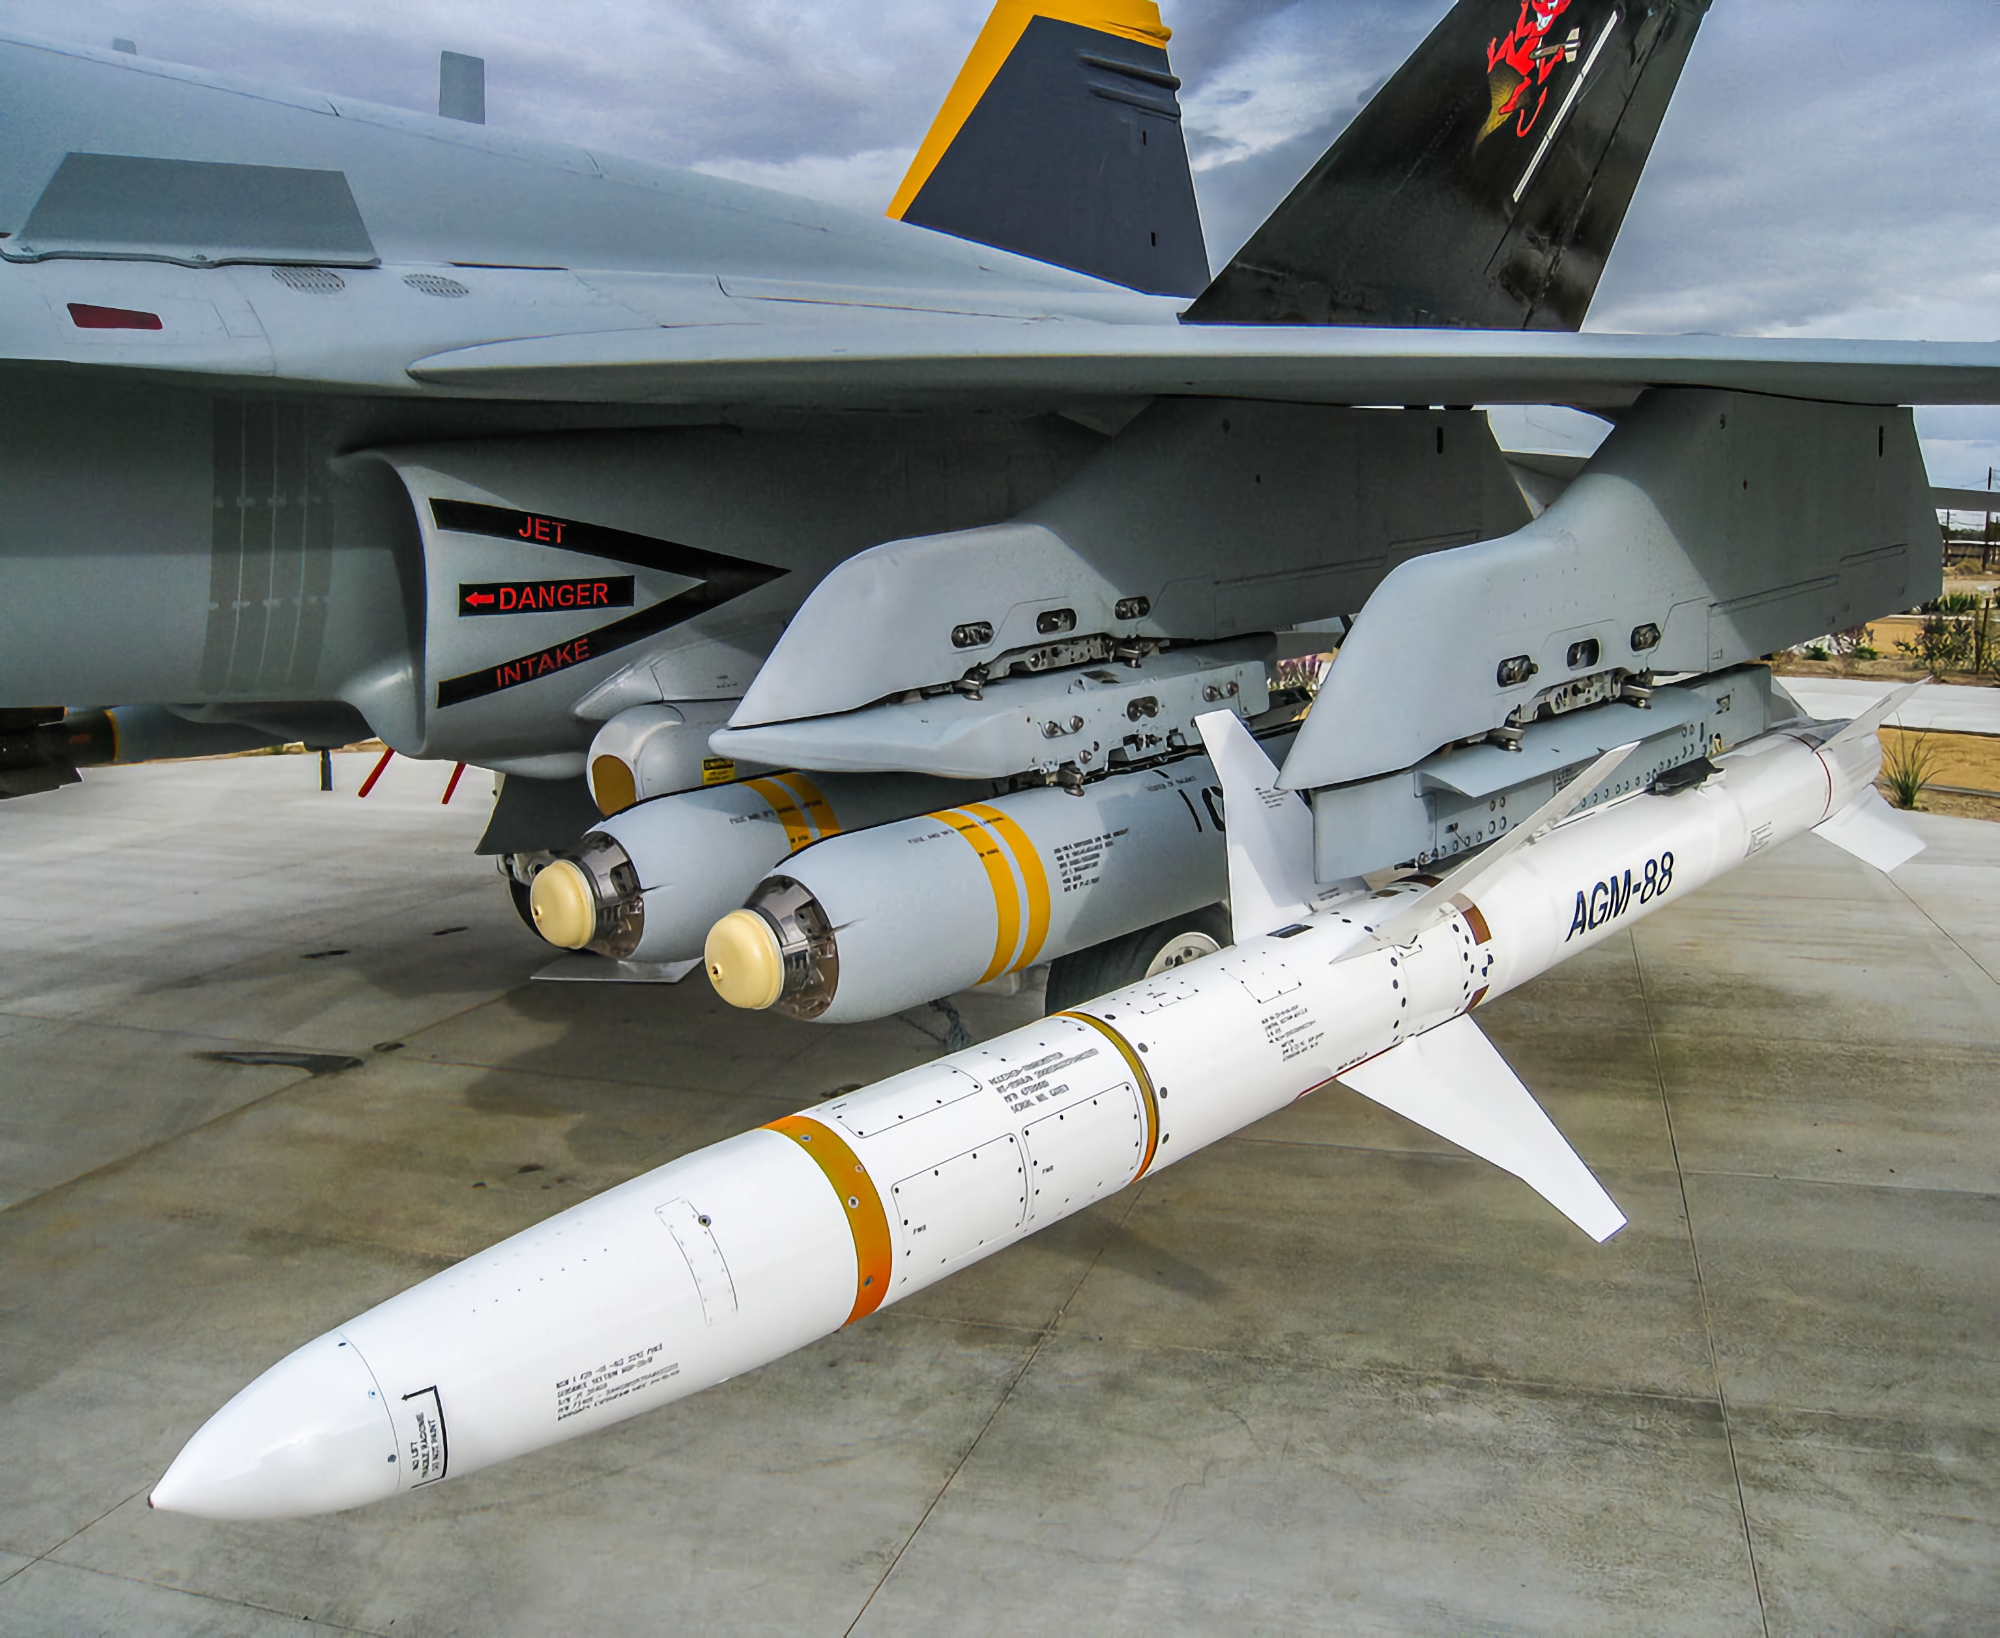 Stany Zjednoczone przekażą Ukrainie szybkie pociski antyradarowe AGM-88 HARM, aby stłumić rosyjski system obrony powietrznej